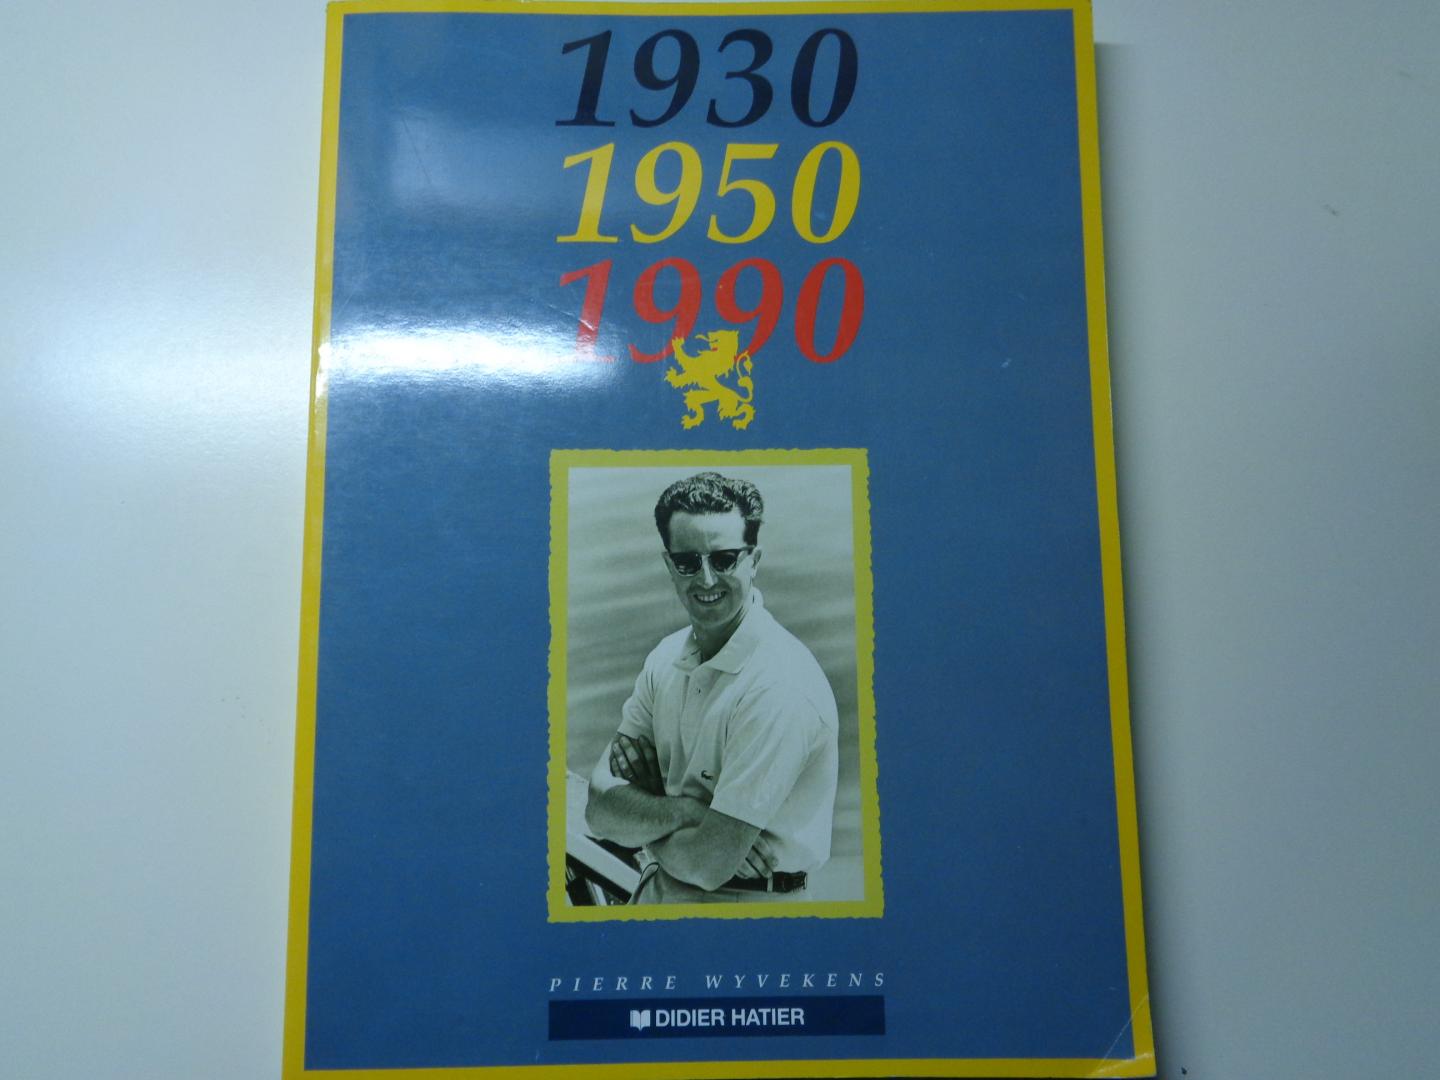 pierre wyvekens - 1930-1950-1990--het boek van koning boudewijn